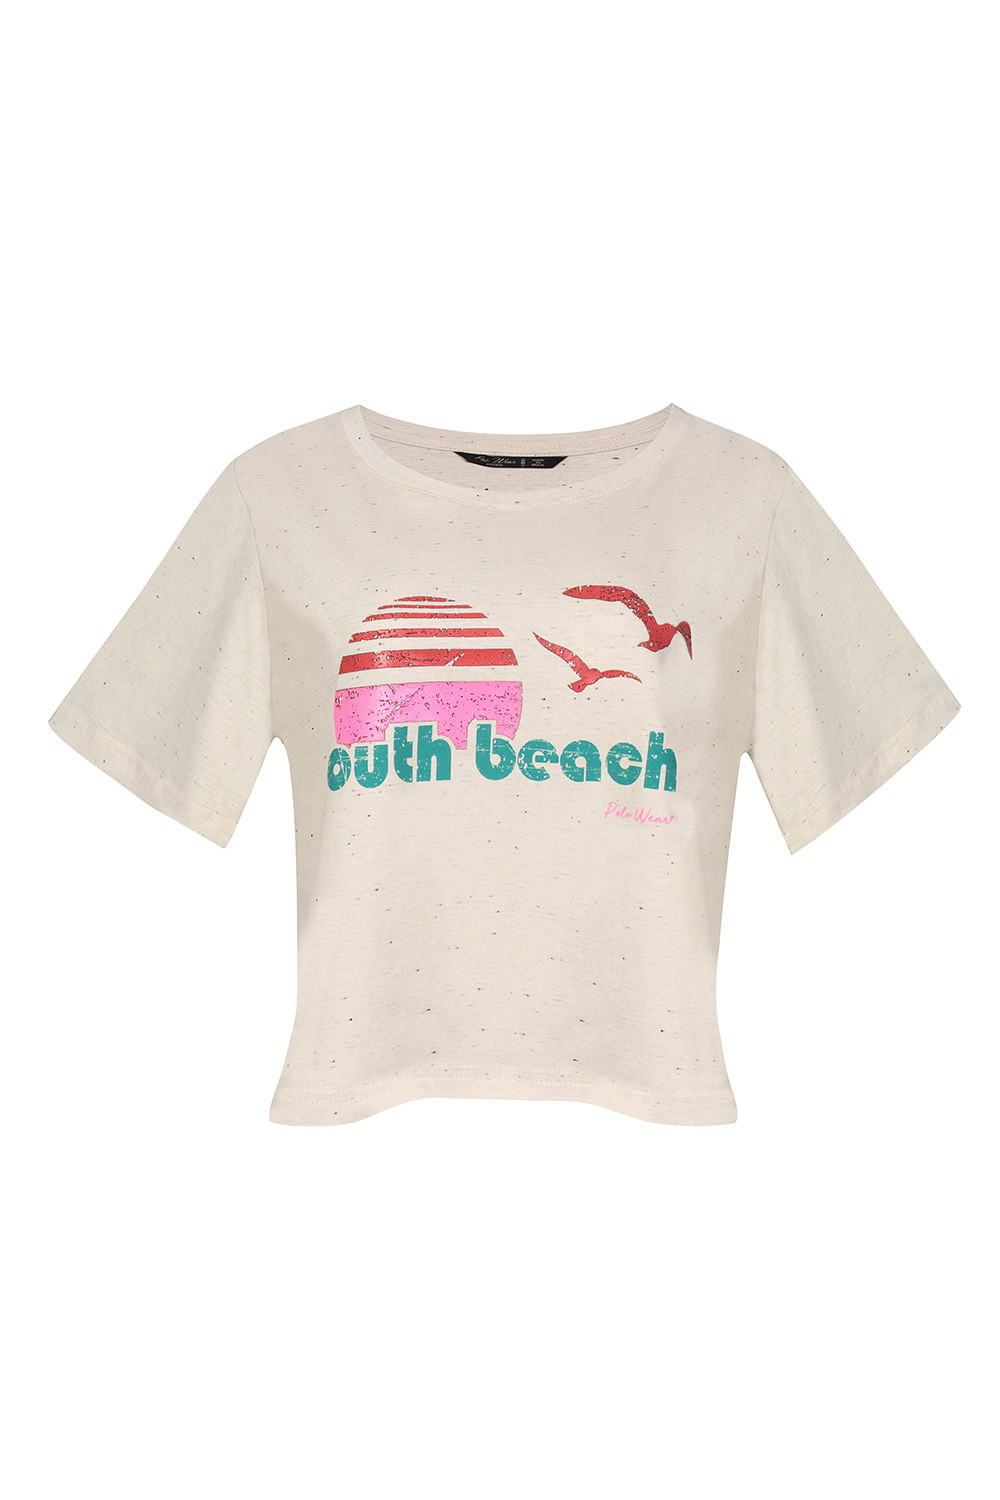 20 ideias como usar camisa  Beach outfit, Beach outfit women